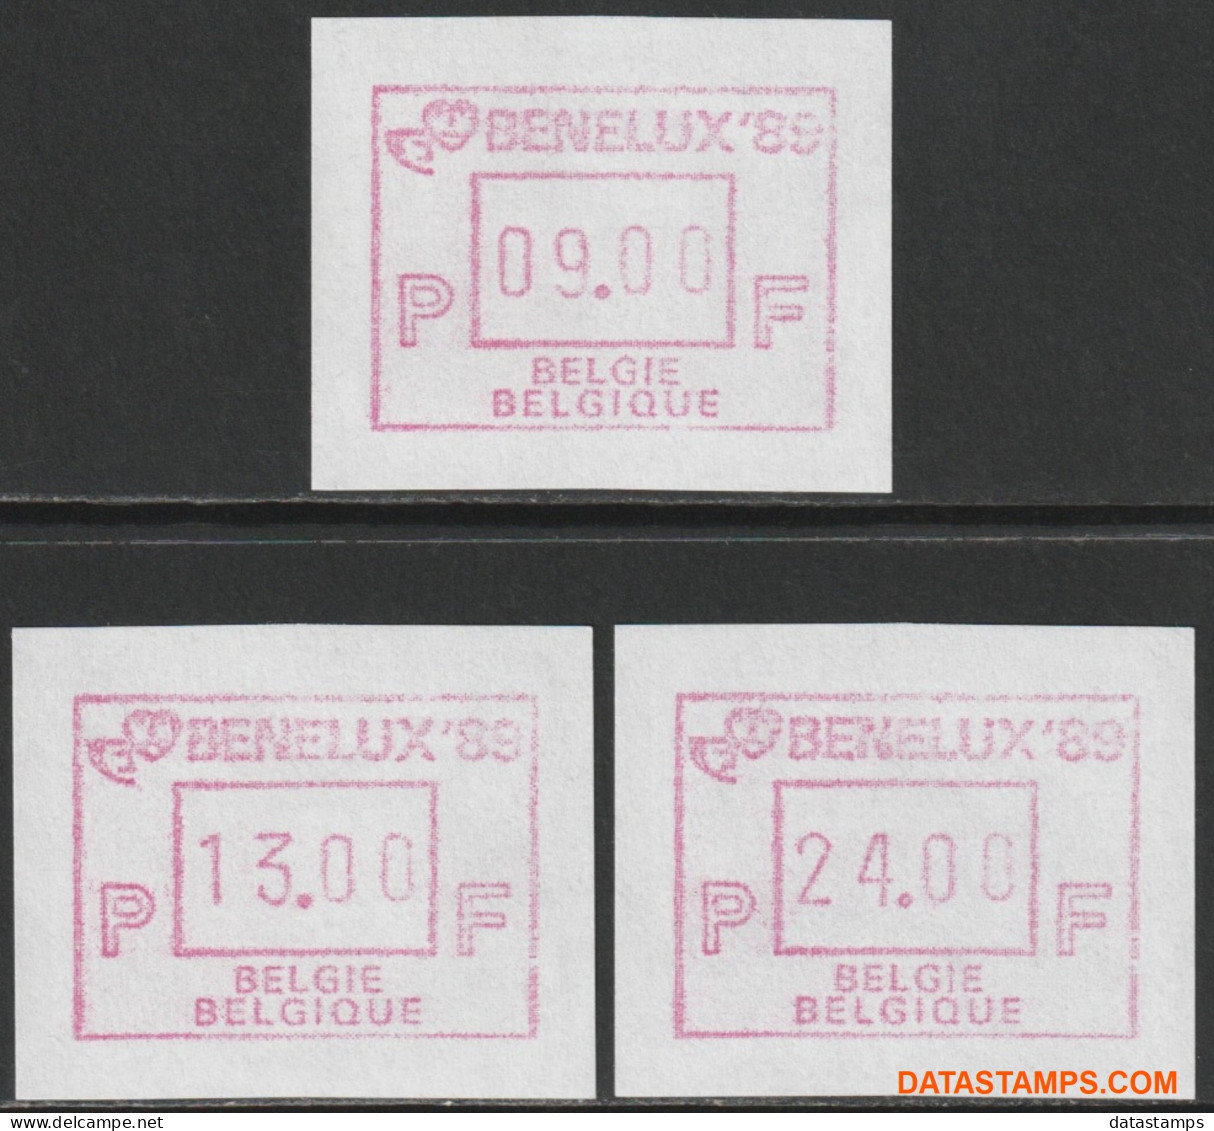 België 1989 - Mi:autom 19, Yv:TD 25, OBP:ATM 76 Set, Machine Stamp - XX - Benelux 89 9-13-24 - Postfris